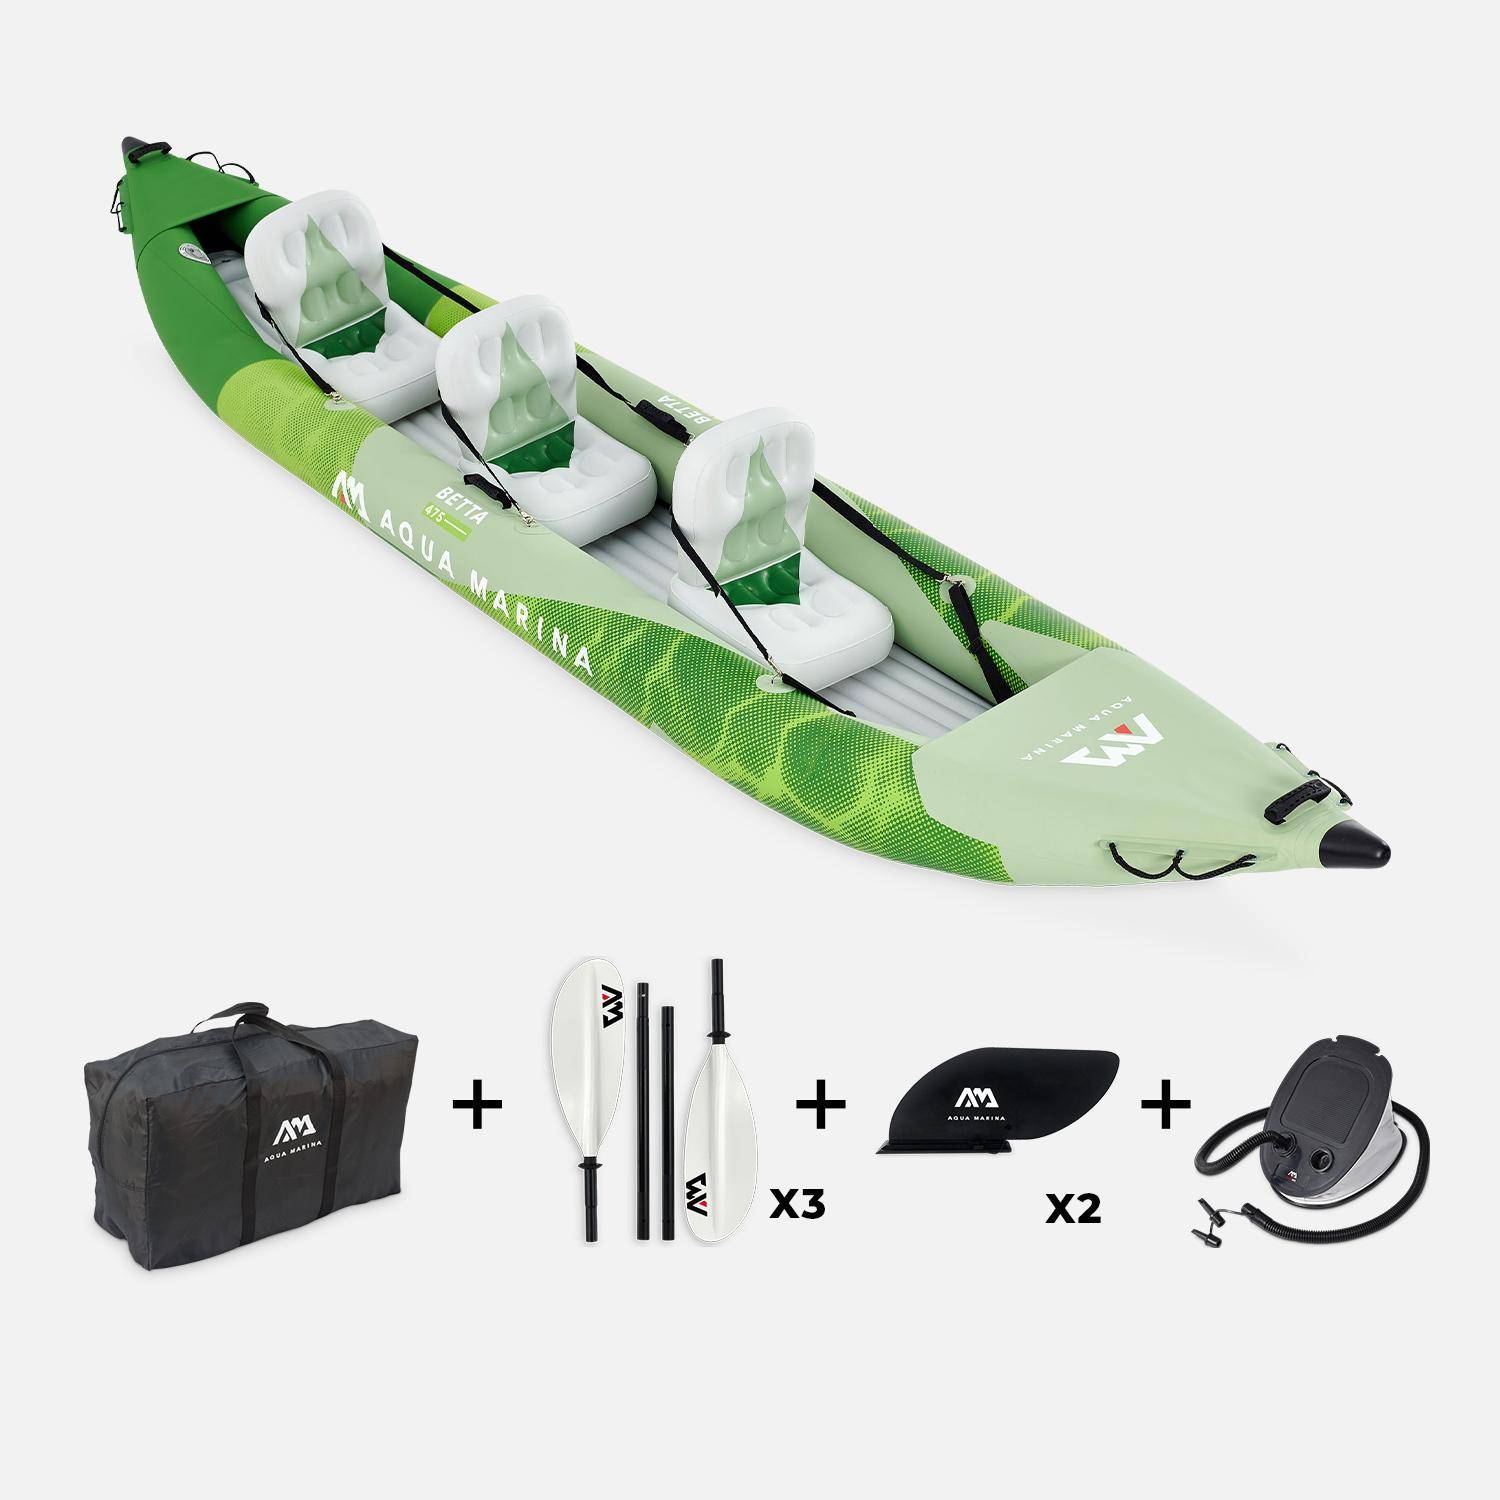 Canoë kayak Betta 3P gonflable trois places 15’7" avec pompe haute pression, sac de rangement et doubles pagaies Photo3